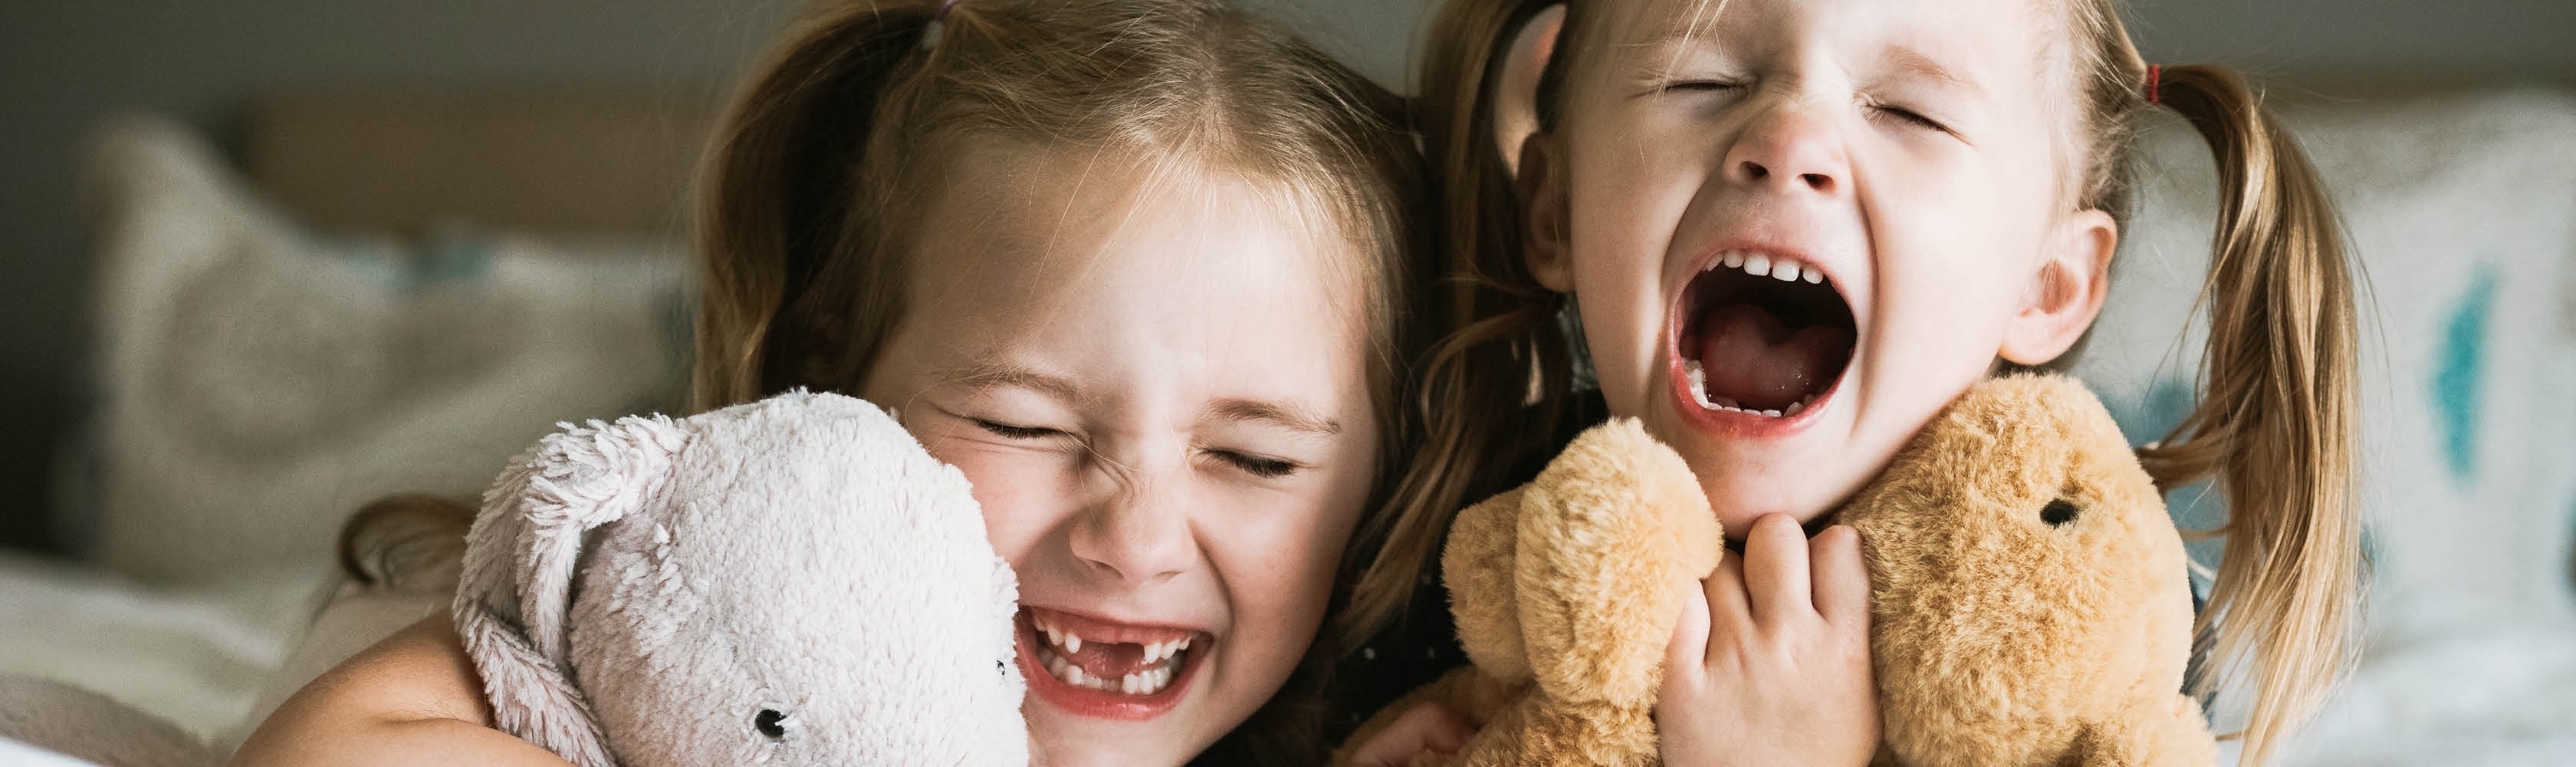 Zwei Mädchen lachen zusammen. Ein Zahnversicherung lohnt sich, besonders für Kinder.